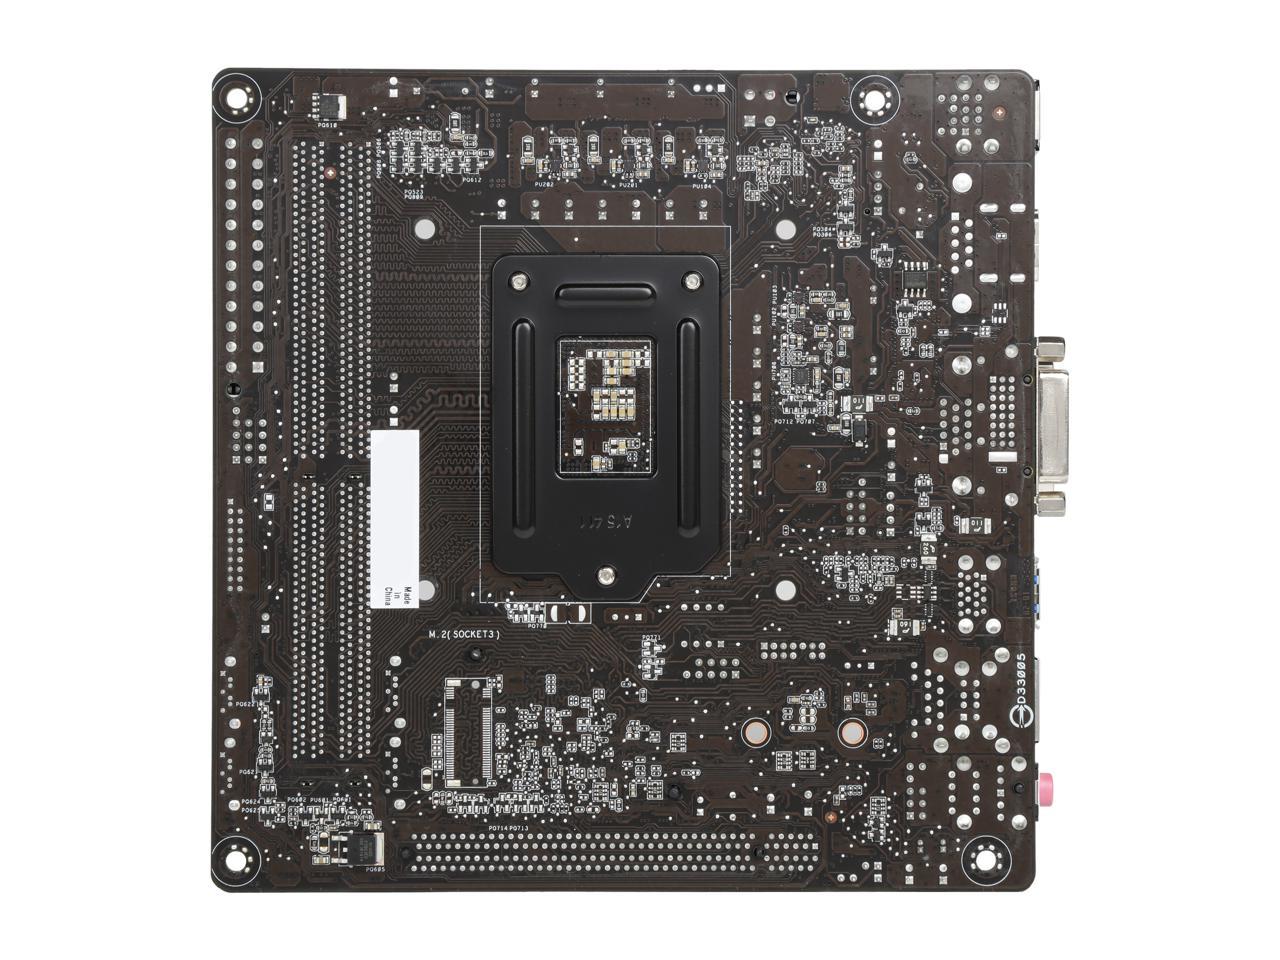 ASUS H110I-PLUS/CSM LGA 1151 Intel H110 HDMI SATA 6Gb/s USB 3.1 Mini ITX Intel Motherboard